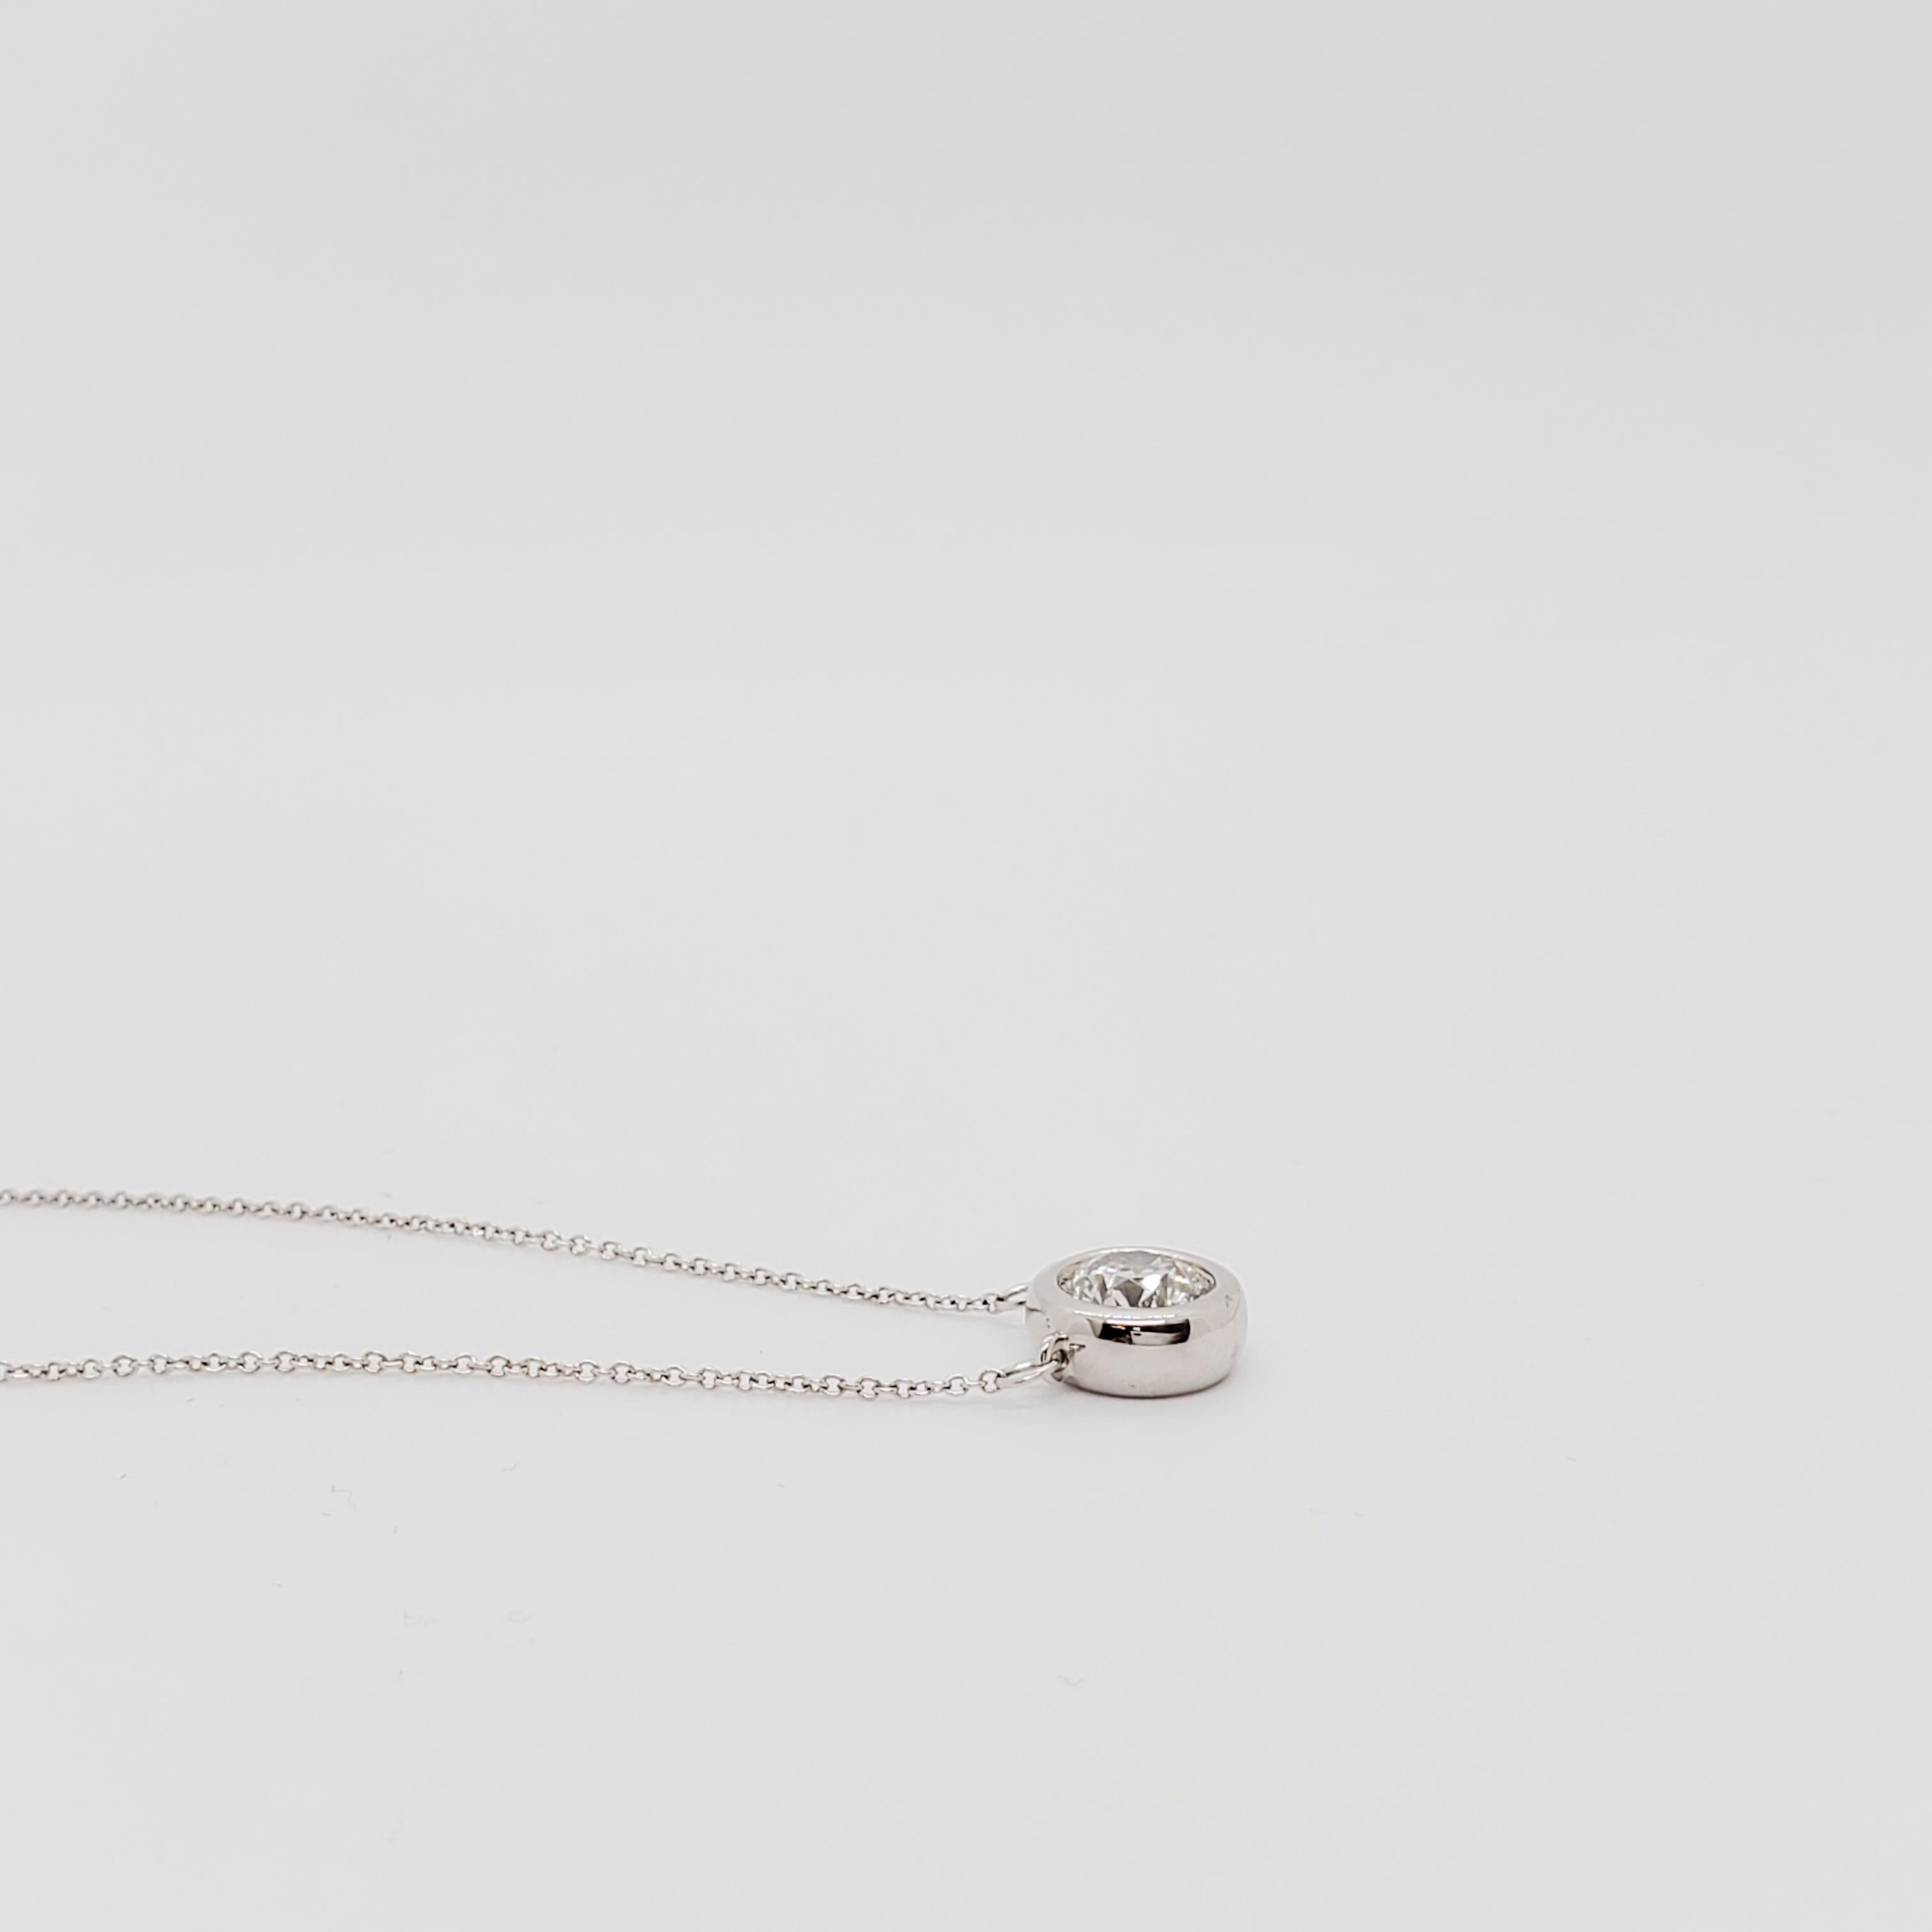 Round Cut Estate White Diamond Pendant Necklace in 14k White Gold